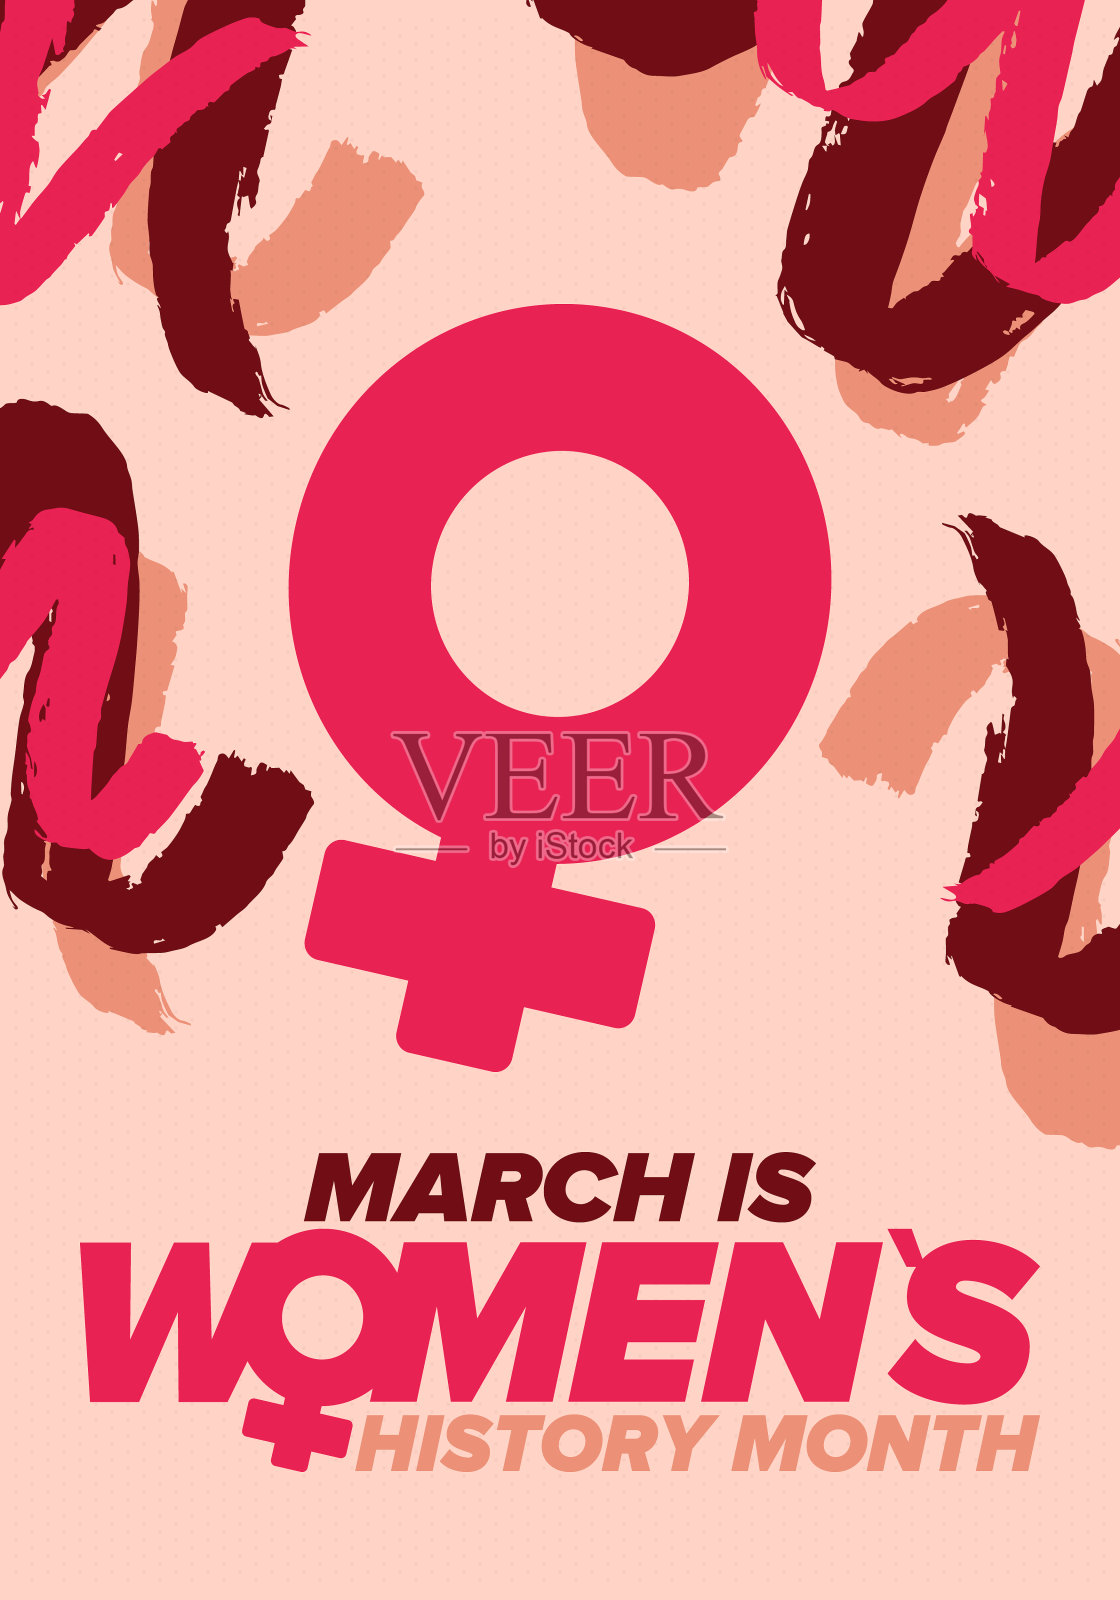 妇女历史月。每年三月庆祝，以纪念妇女对历史的贡献。女性的象征。妇女的权利。世界上的女孩力量。海报,明信片,旗帜。矢量图设计模板素材